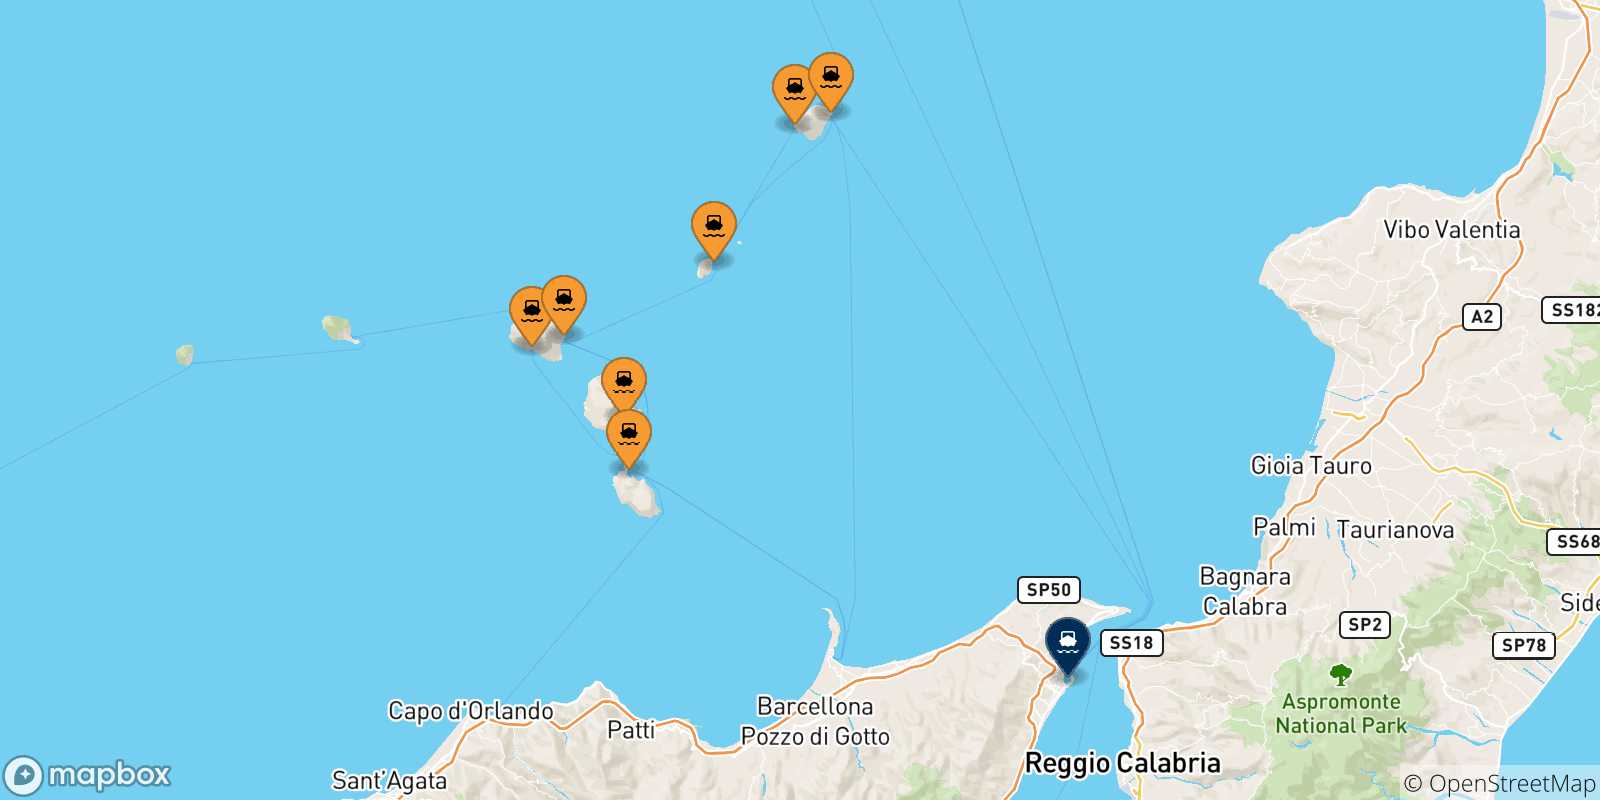 Mappa delle possibili rotte tra le Isole Eolie e Messina